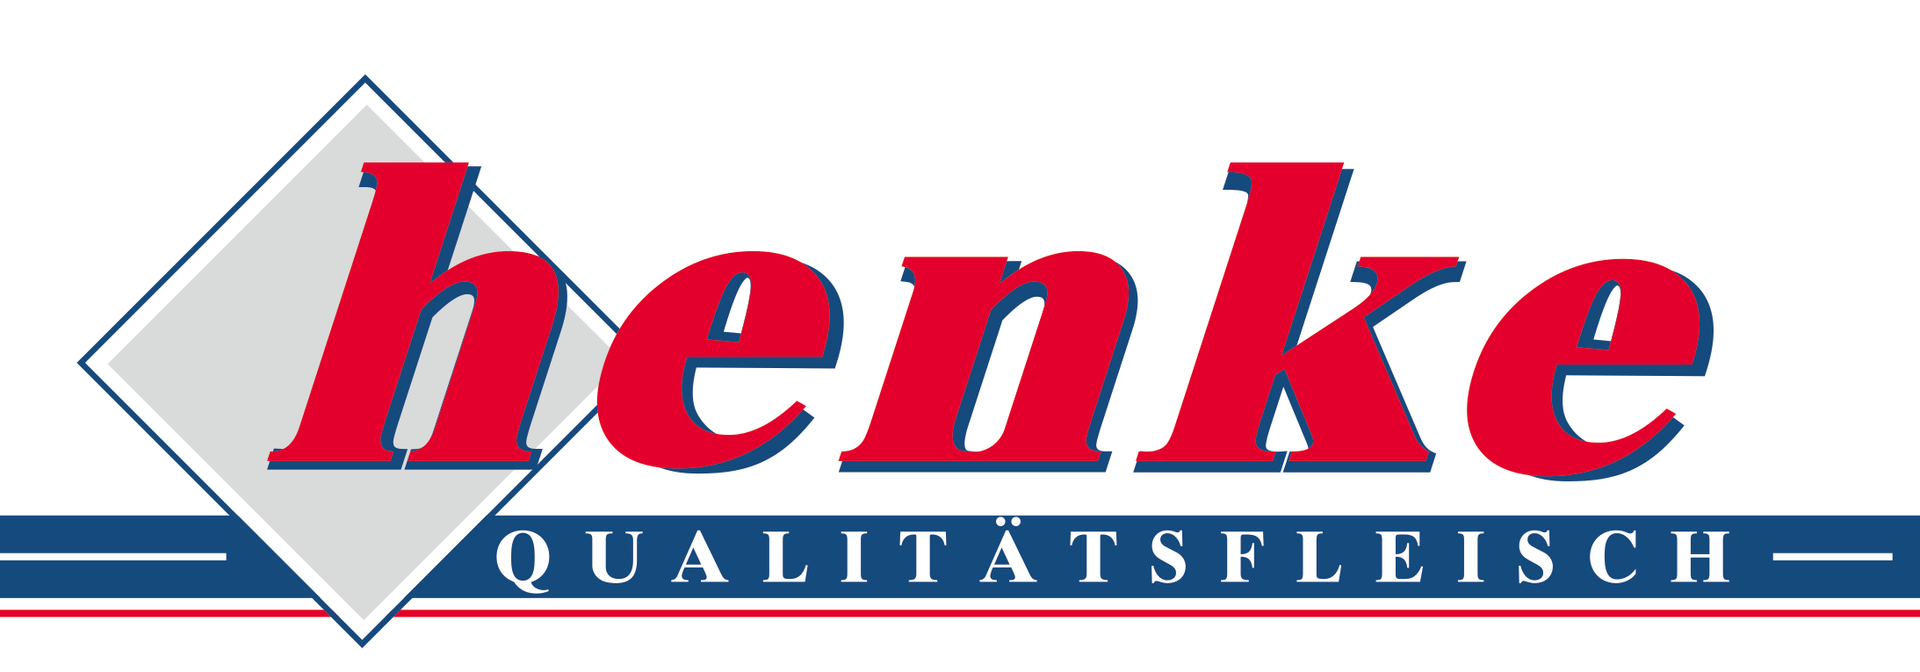 Fleischhandelsgesellschaft Henke mbH-Logo